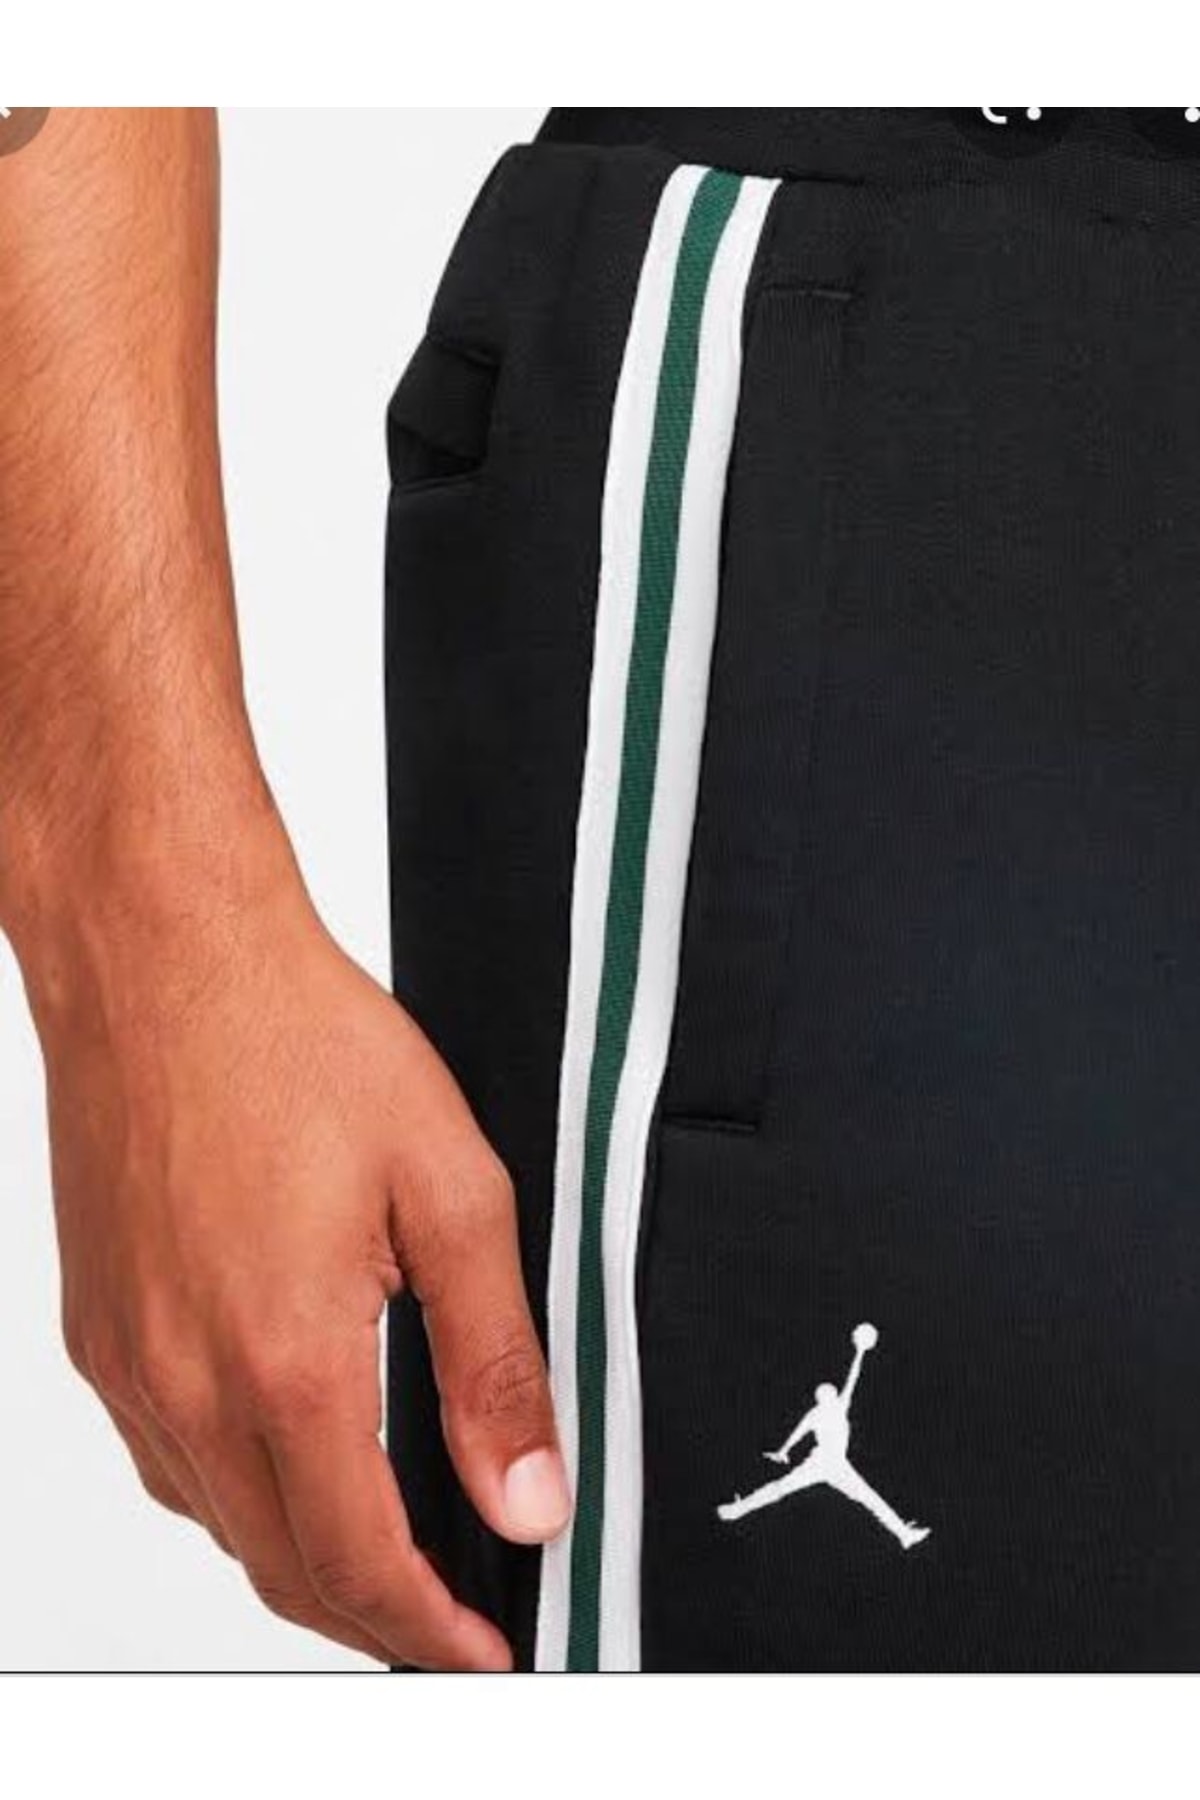 Nike Jordan Parıs Saınt- Germaın Men's Fleece Pants Db6502-010